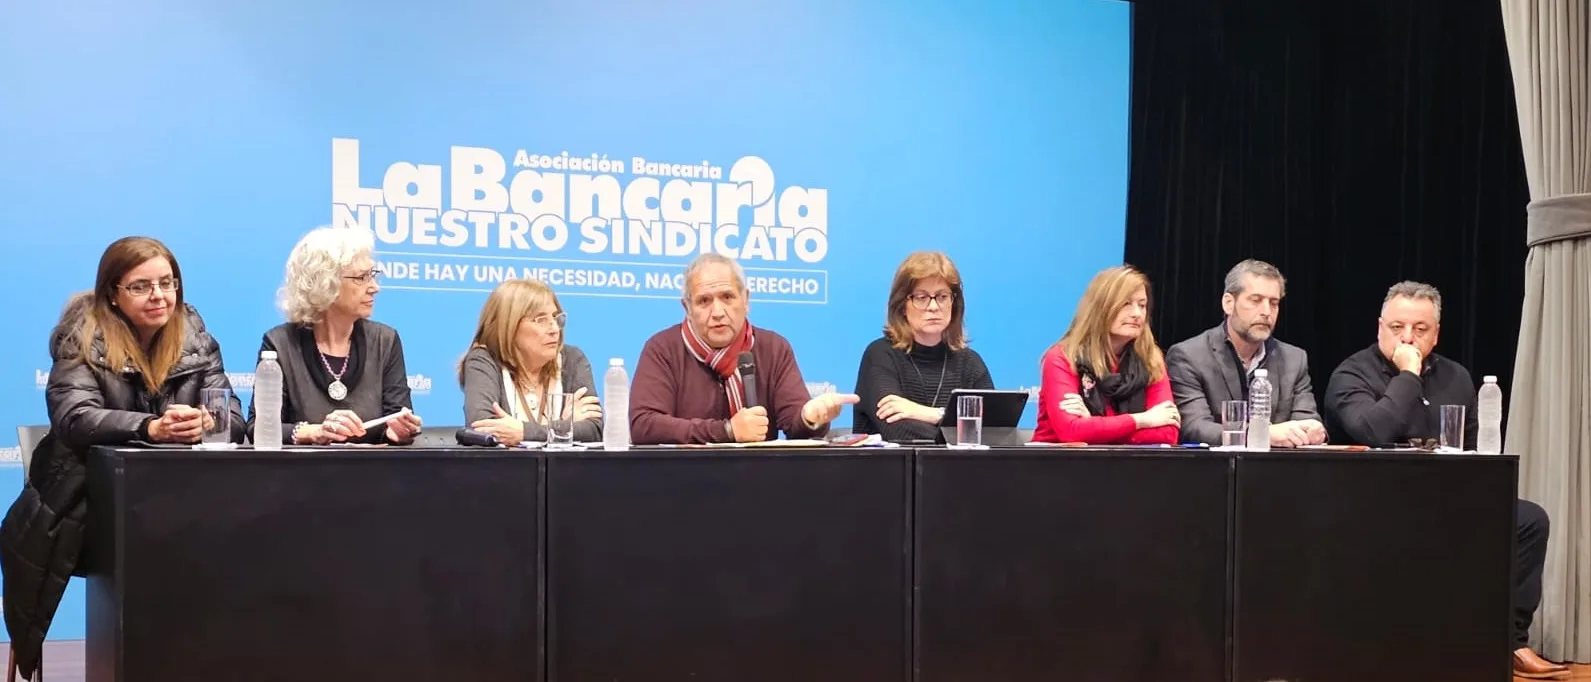 PANEL DE REFLEXIÓN. Sindicalismo y Género para América Latina